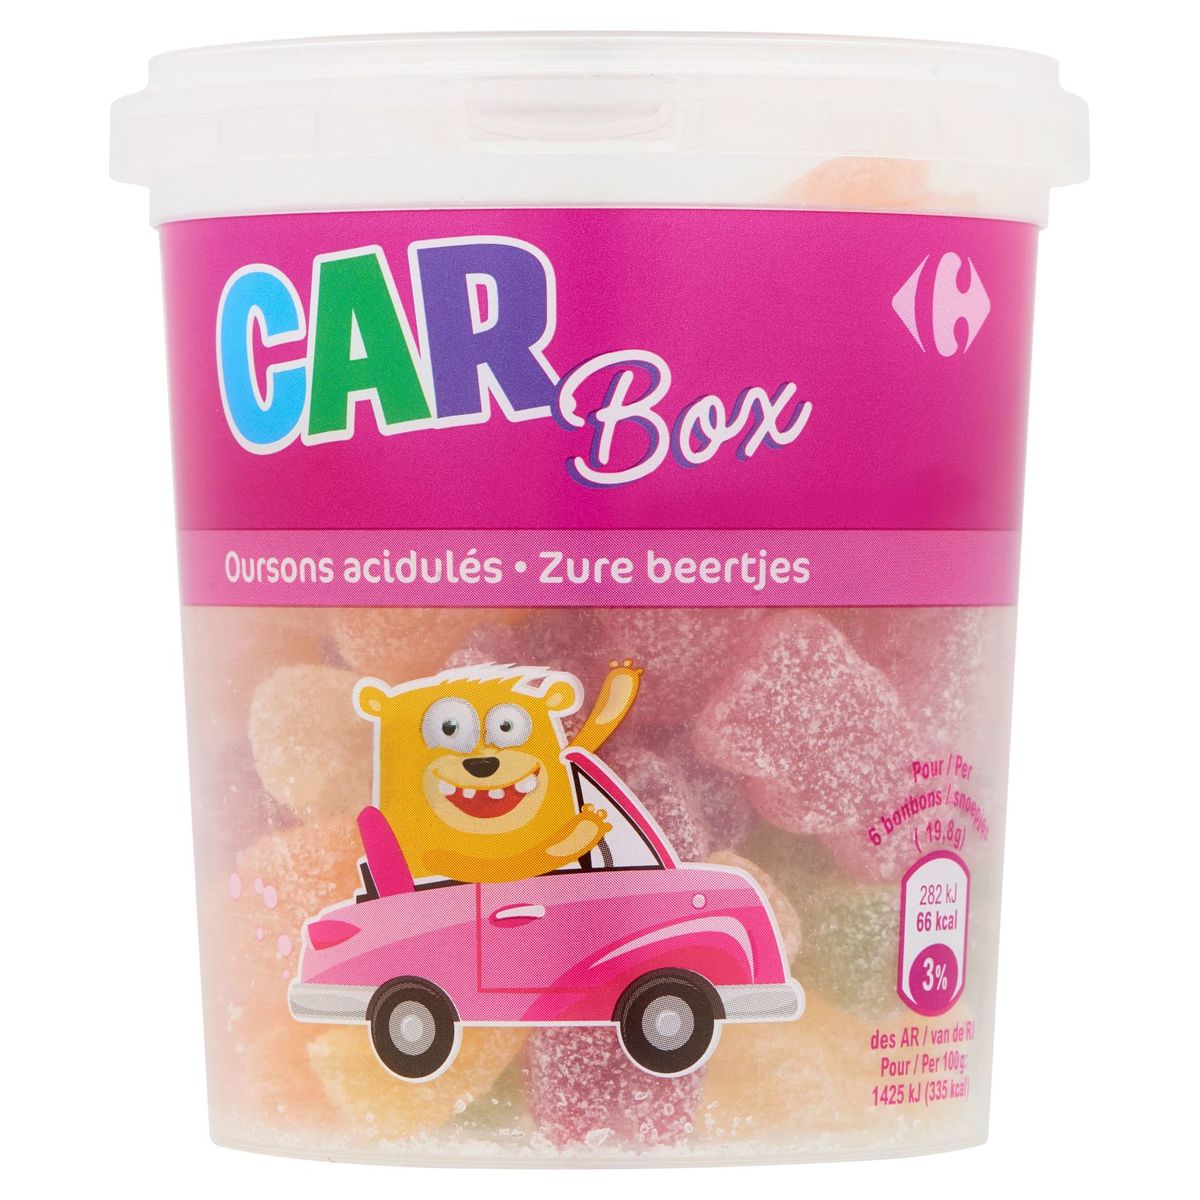 Carrefour Car Box Oursons Acidulés 220 g